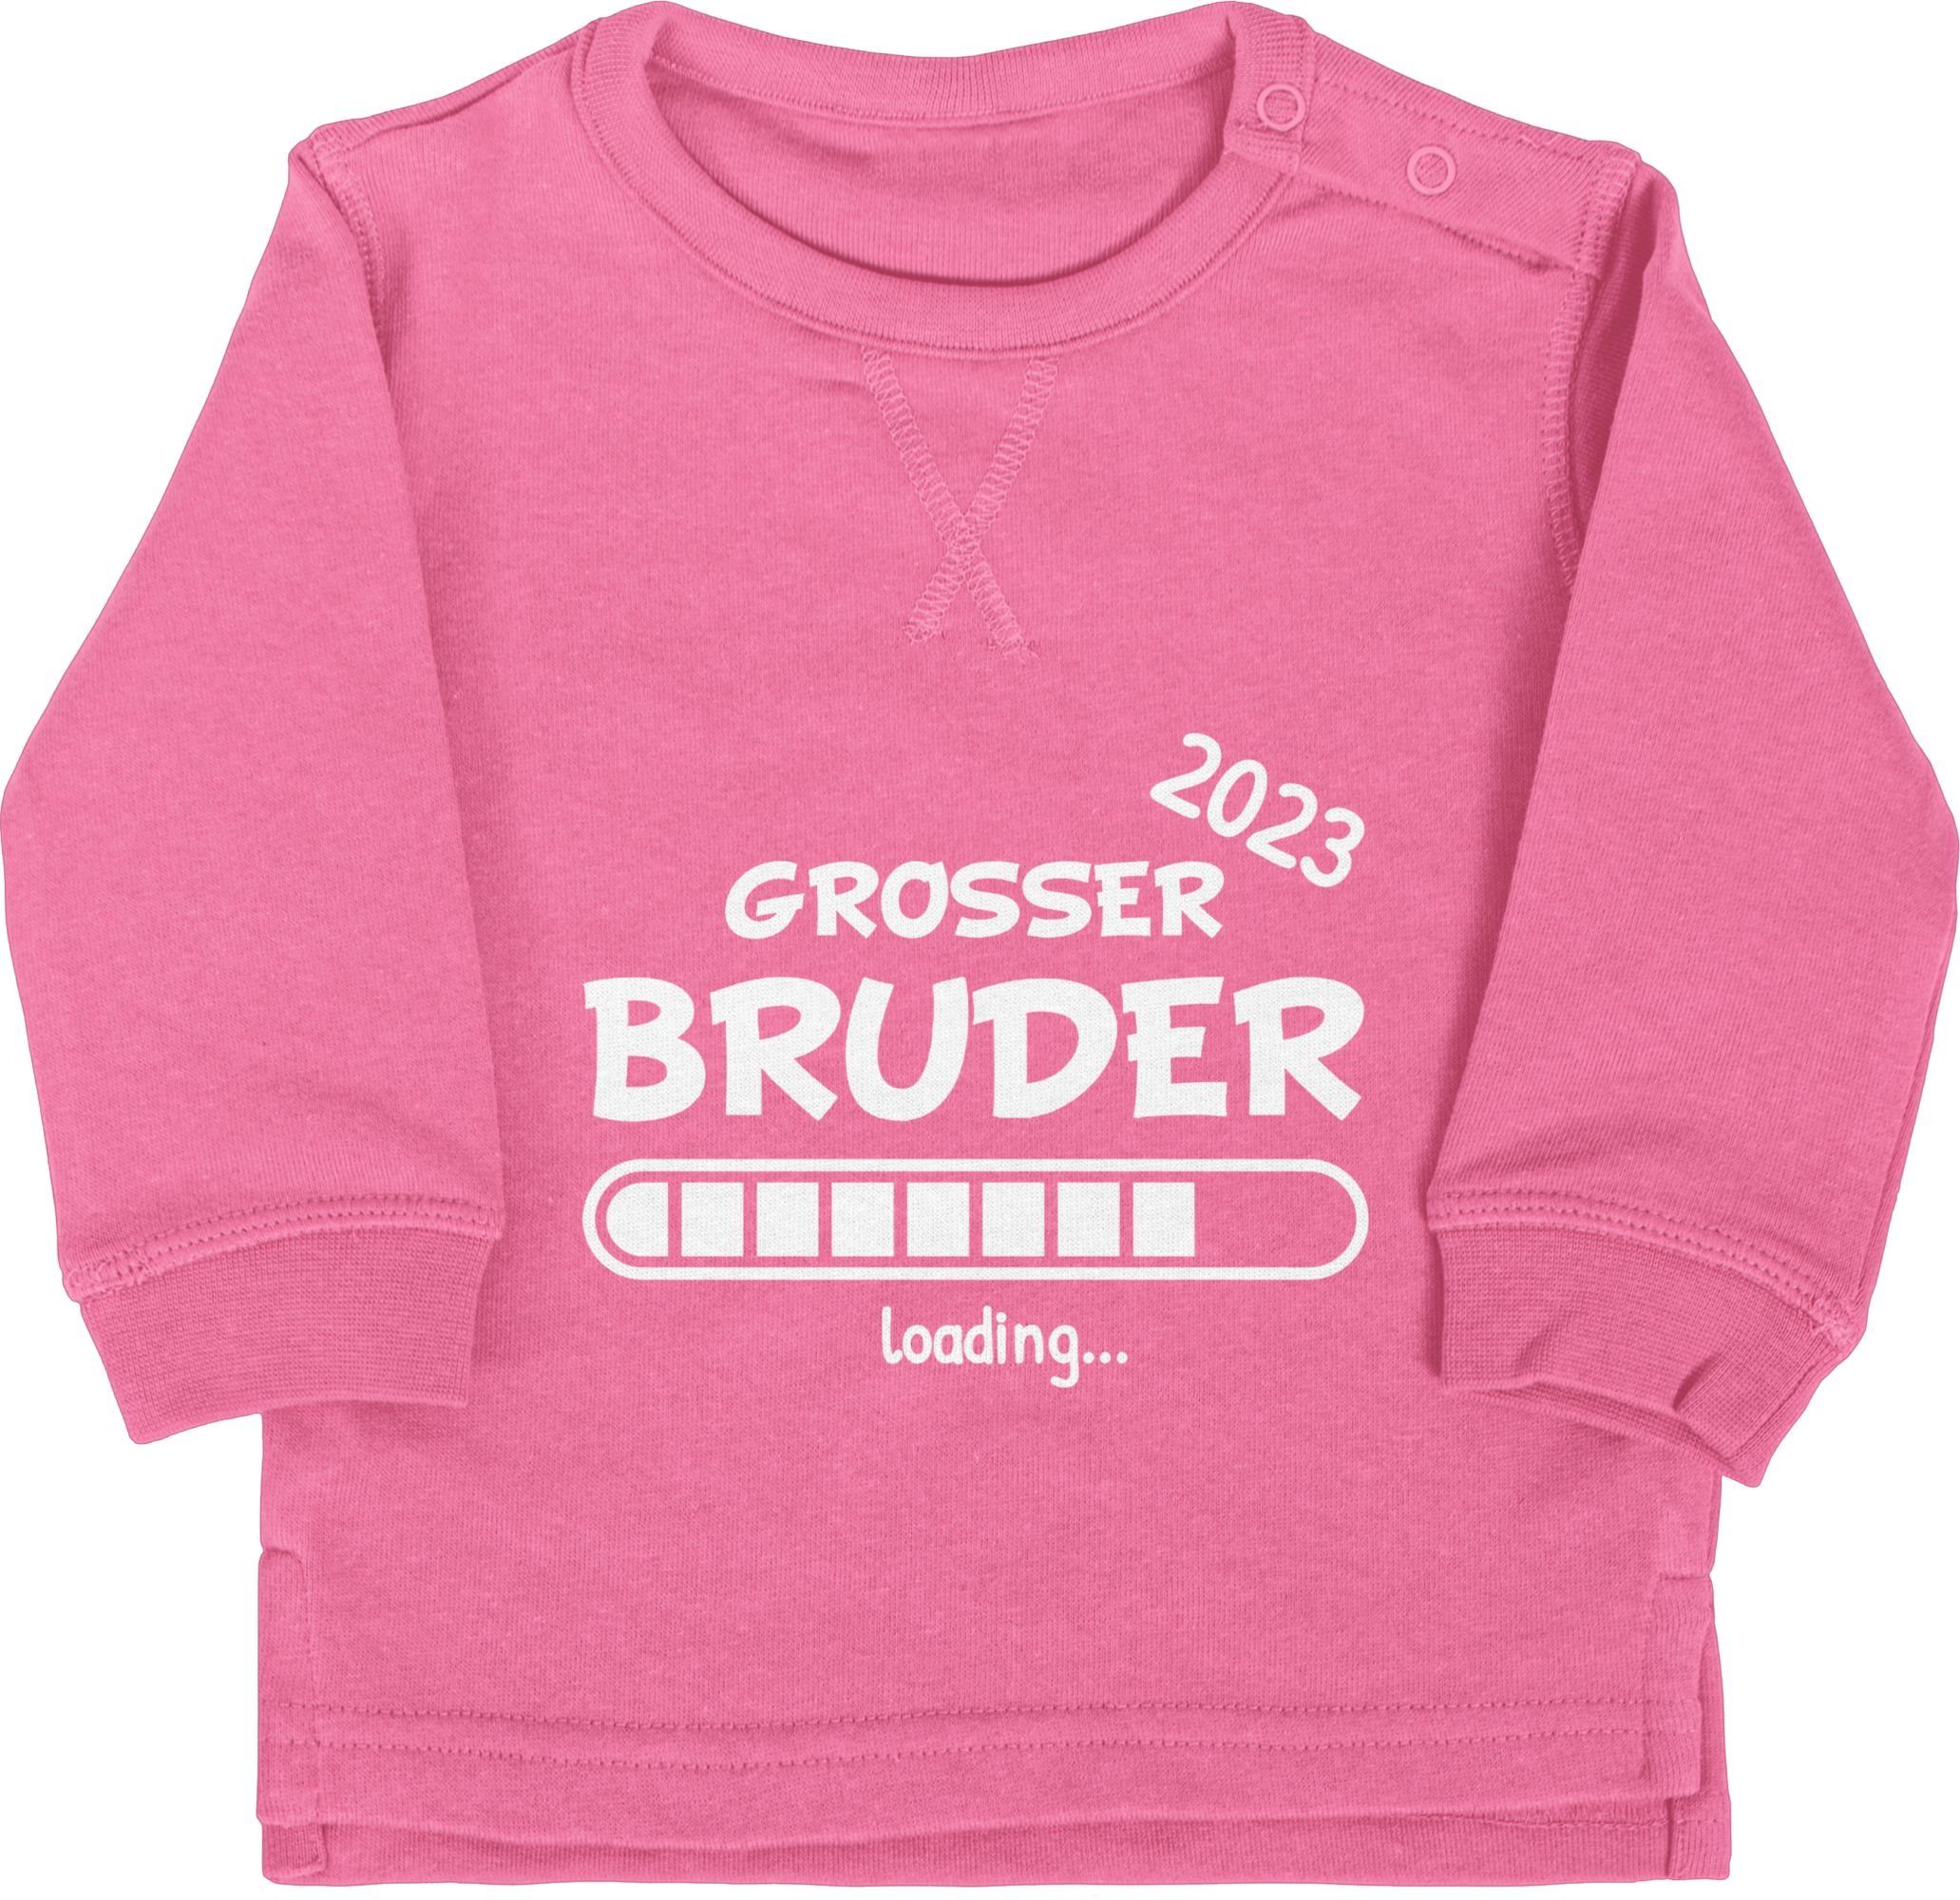 Sweatshirt Shirtracer 3 2023 Bruder Großer Bruder Großer Pink loading